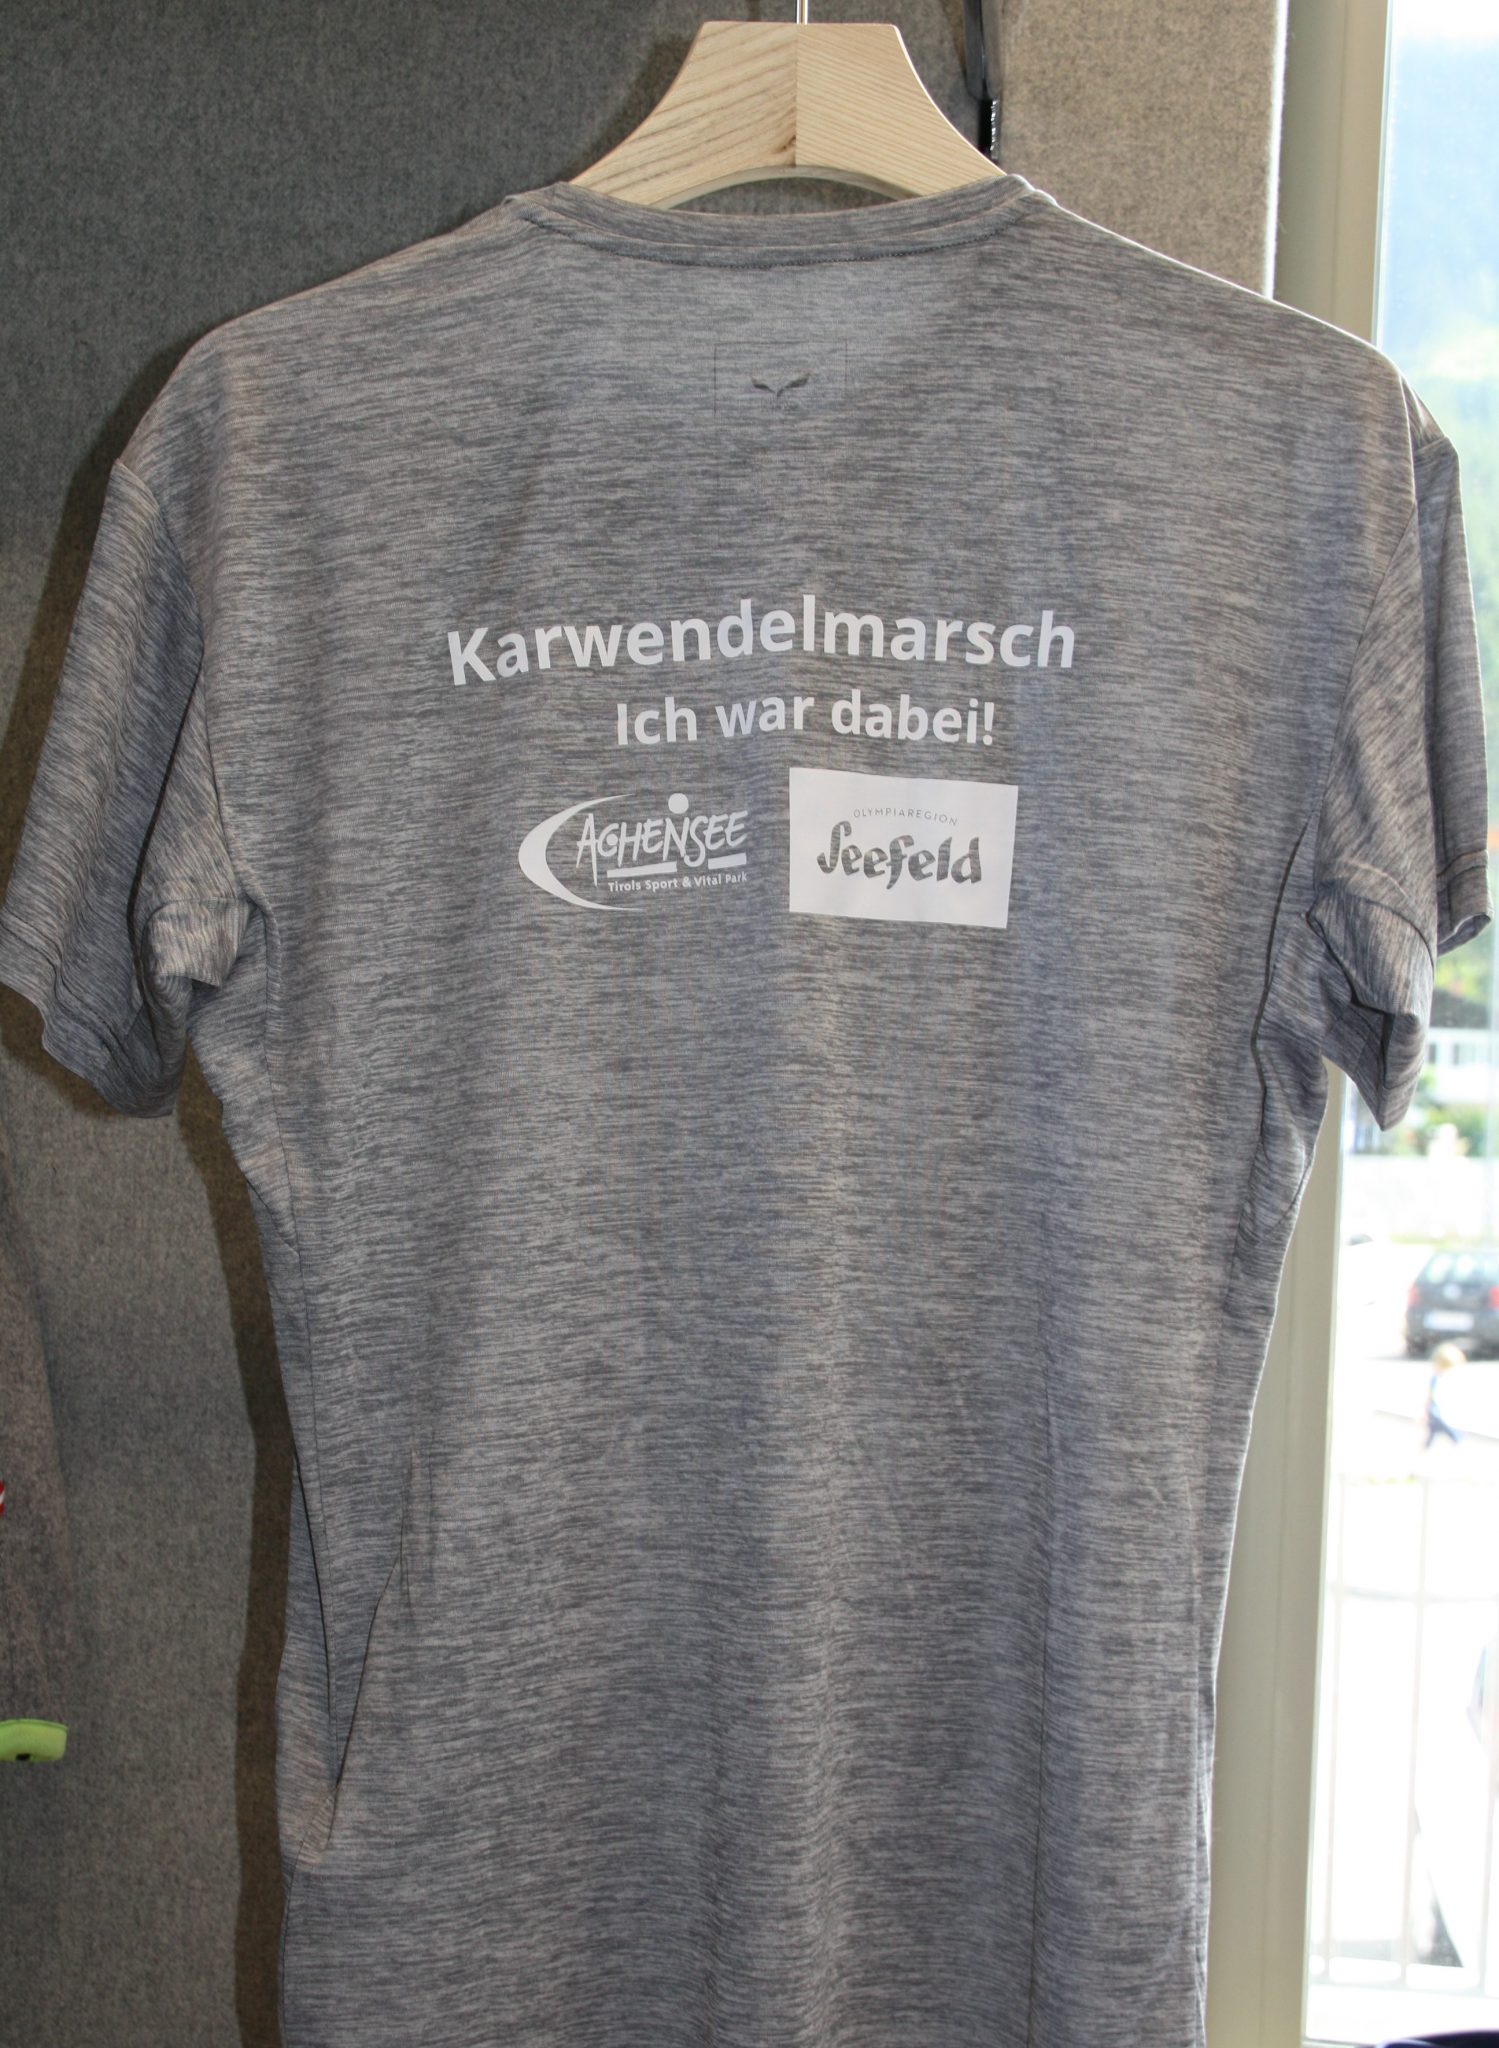 Salewa – „Ich war dabei“ Karwendelmarsch T-Shirt (Men) in S